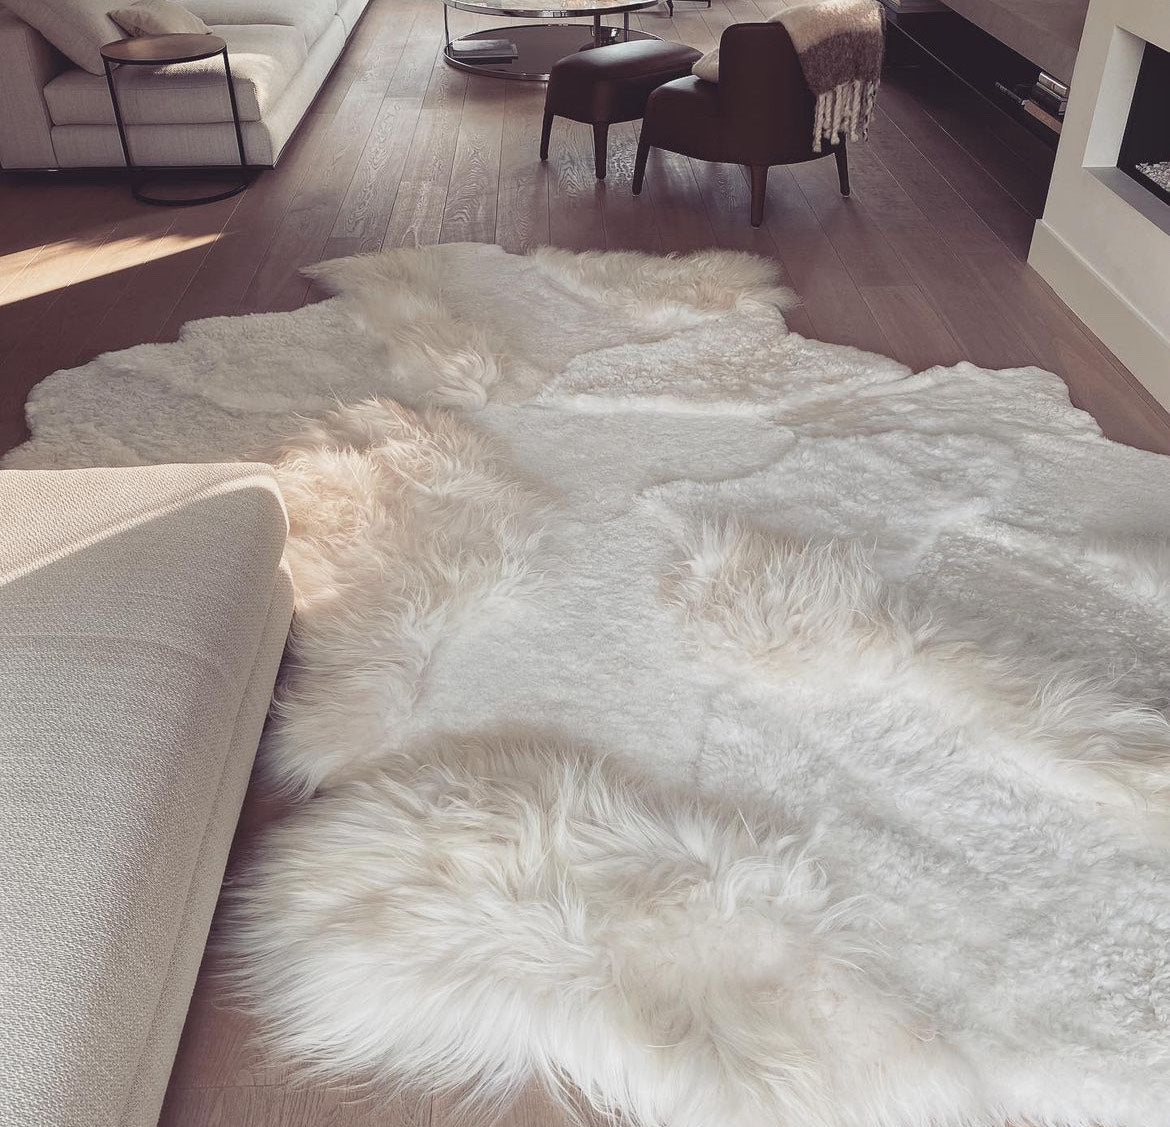 Wit tapijt uit schapenvachten, gemaakt uit IJslandse schapenvachten welke door Monroe life aan elkaar worden genaaid ins ons ervaren atelier